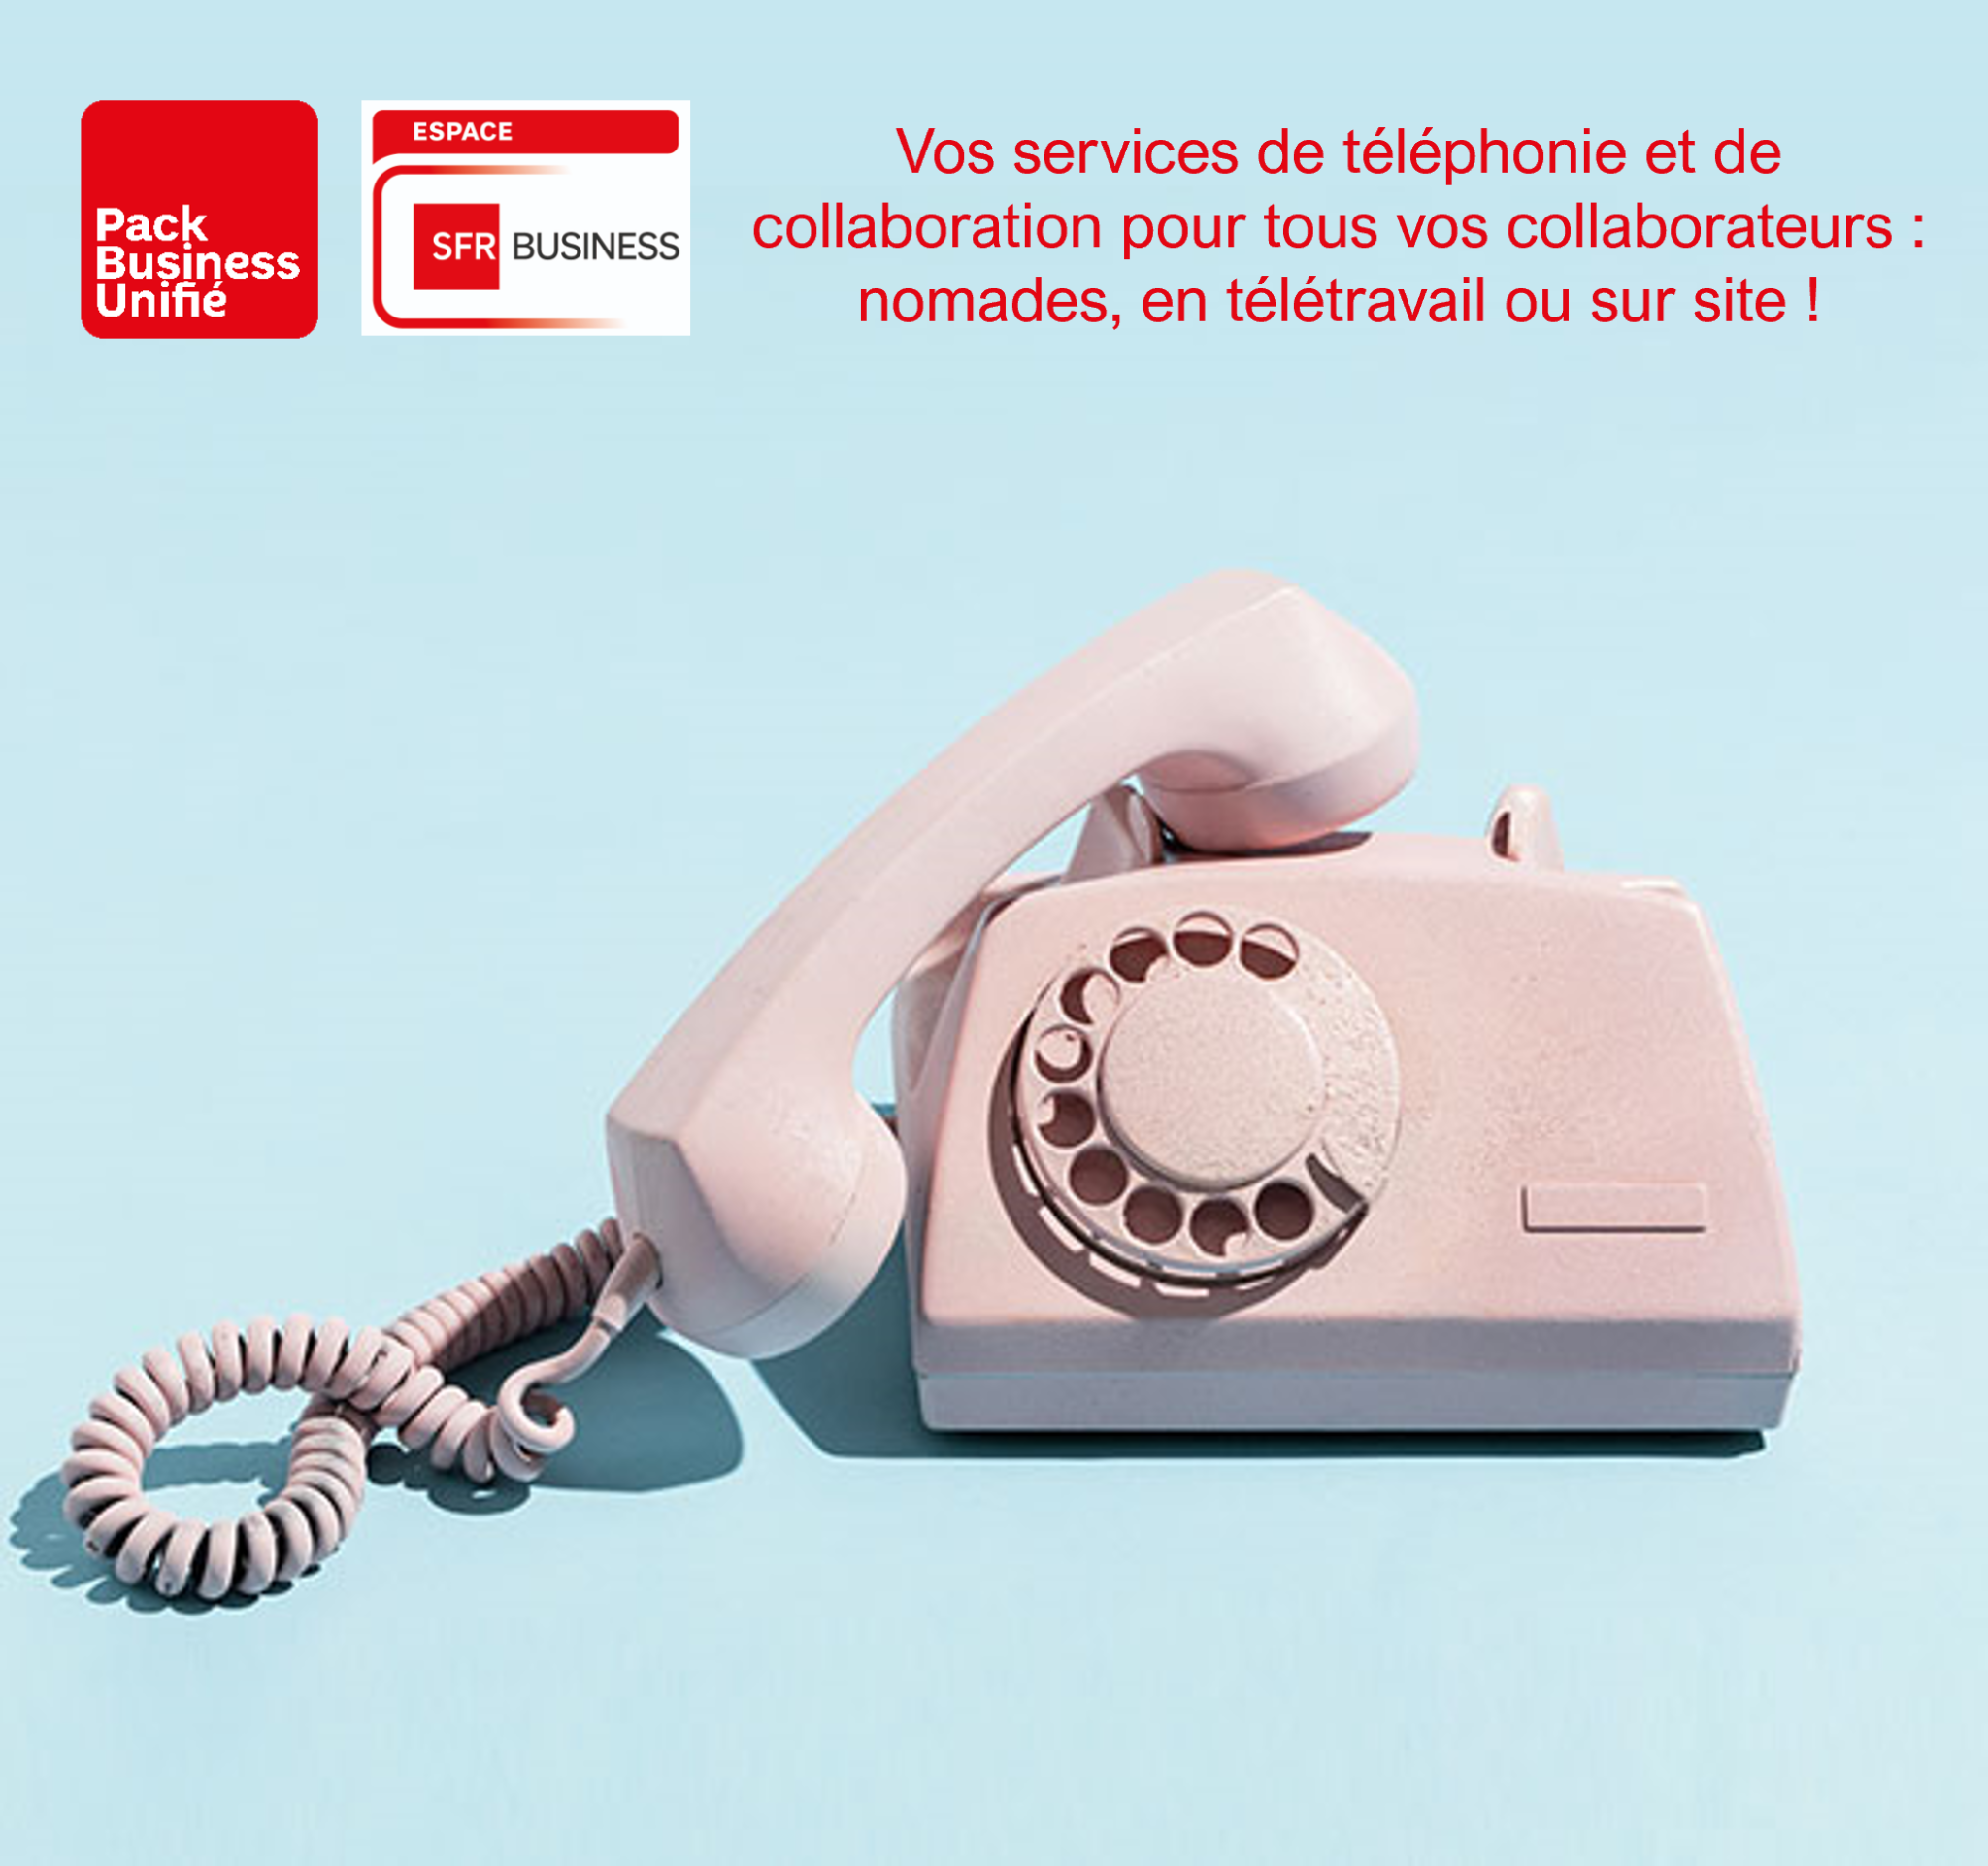 Téléphonie hébergée - Pack Business Unifié - VDI TELECOM